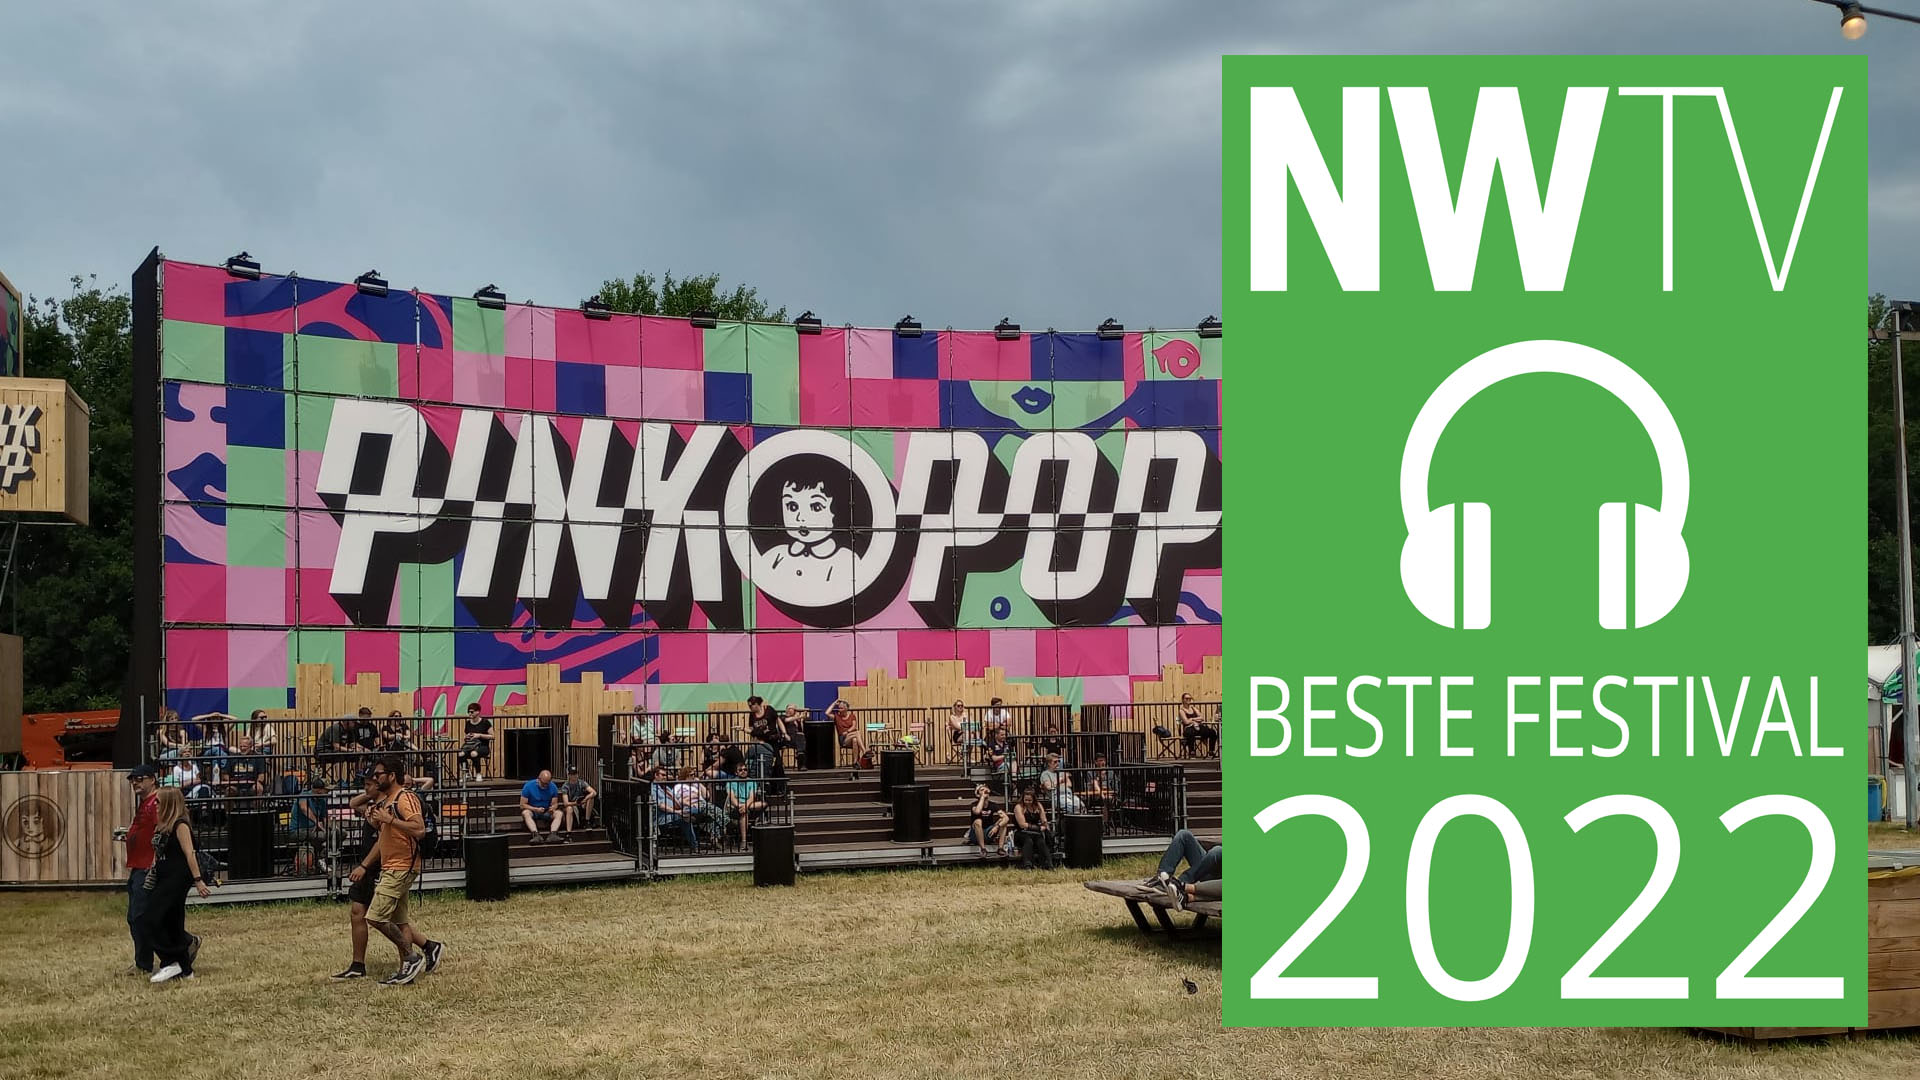 NWTV-Awards 2022: Pinkpop is het beste festival van 2022